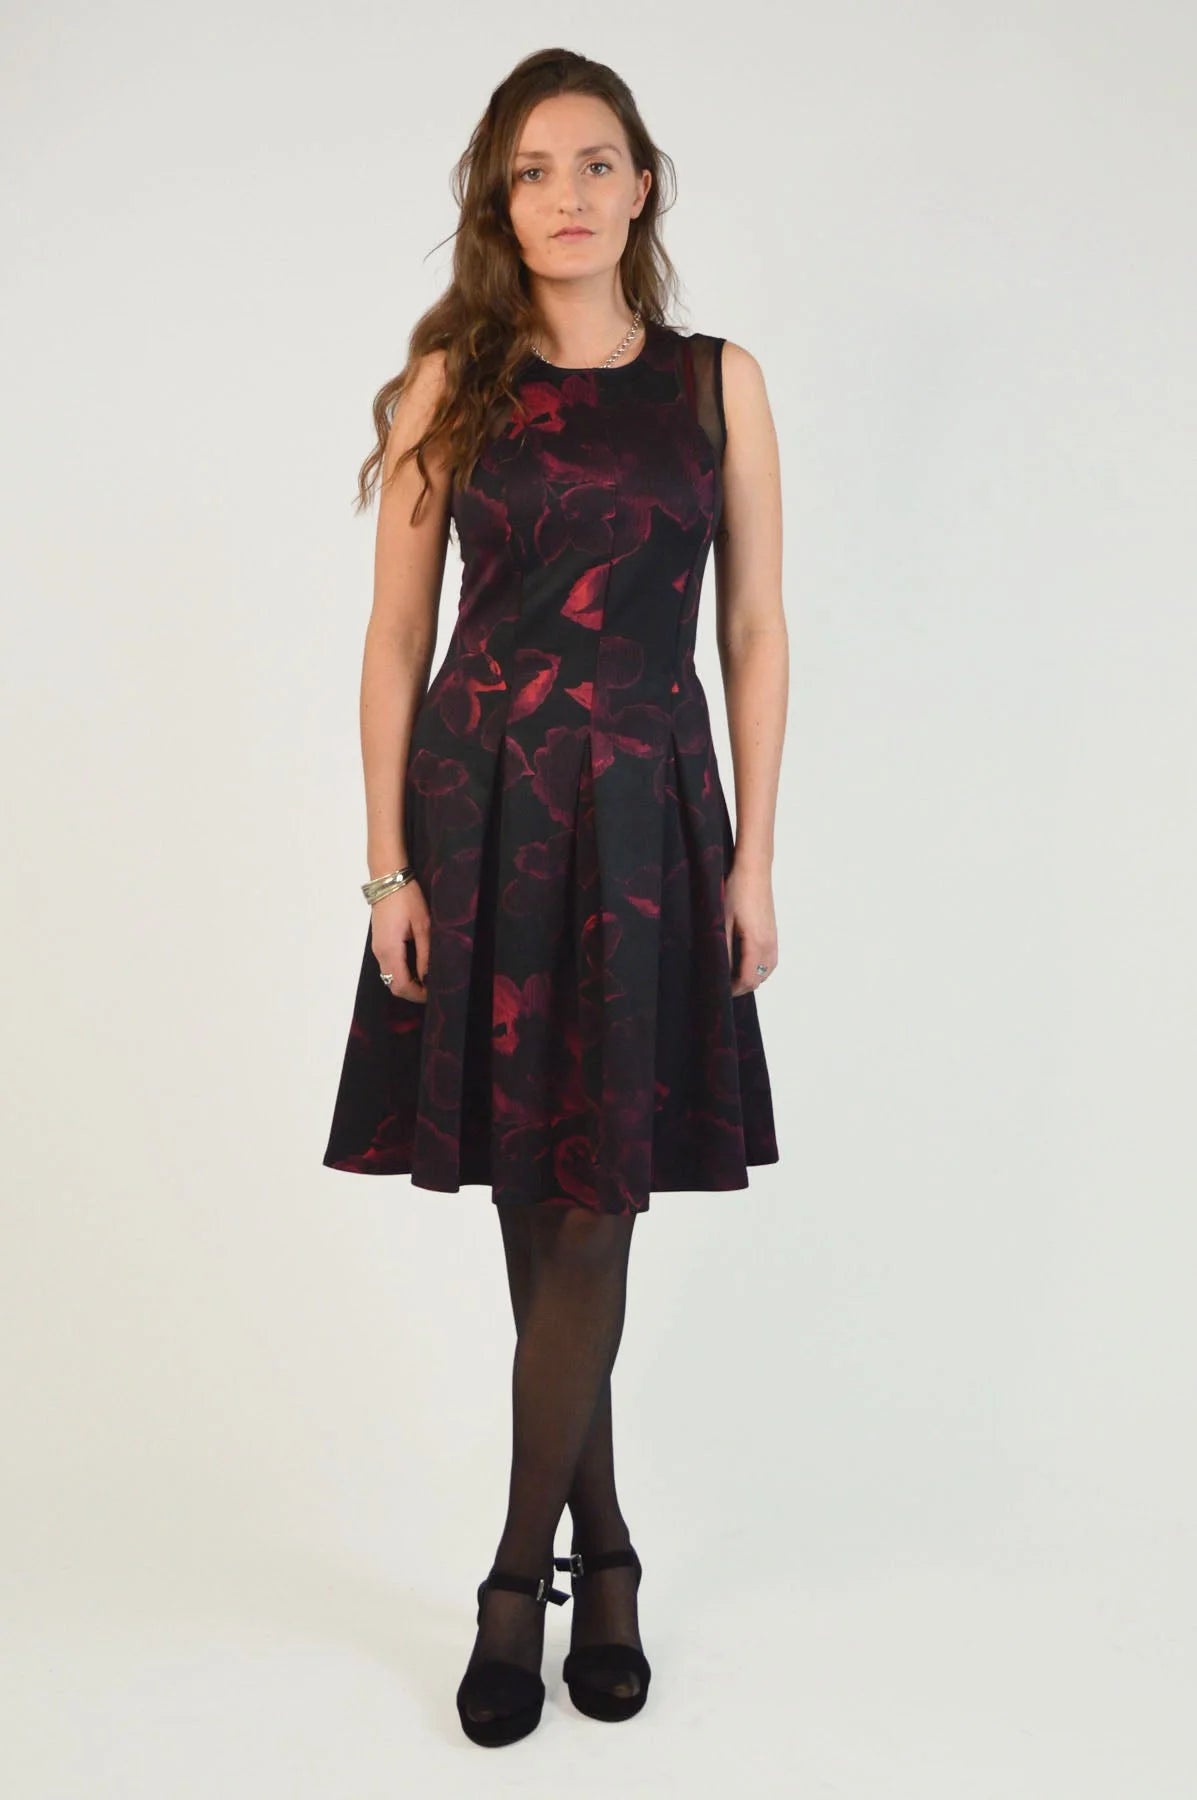 Secret Label Floral Skater Dress Black/Burgundy / 6